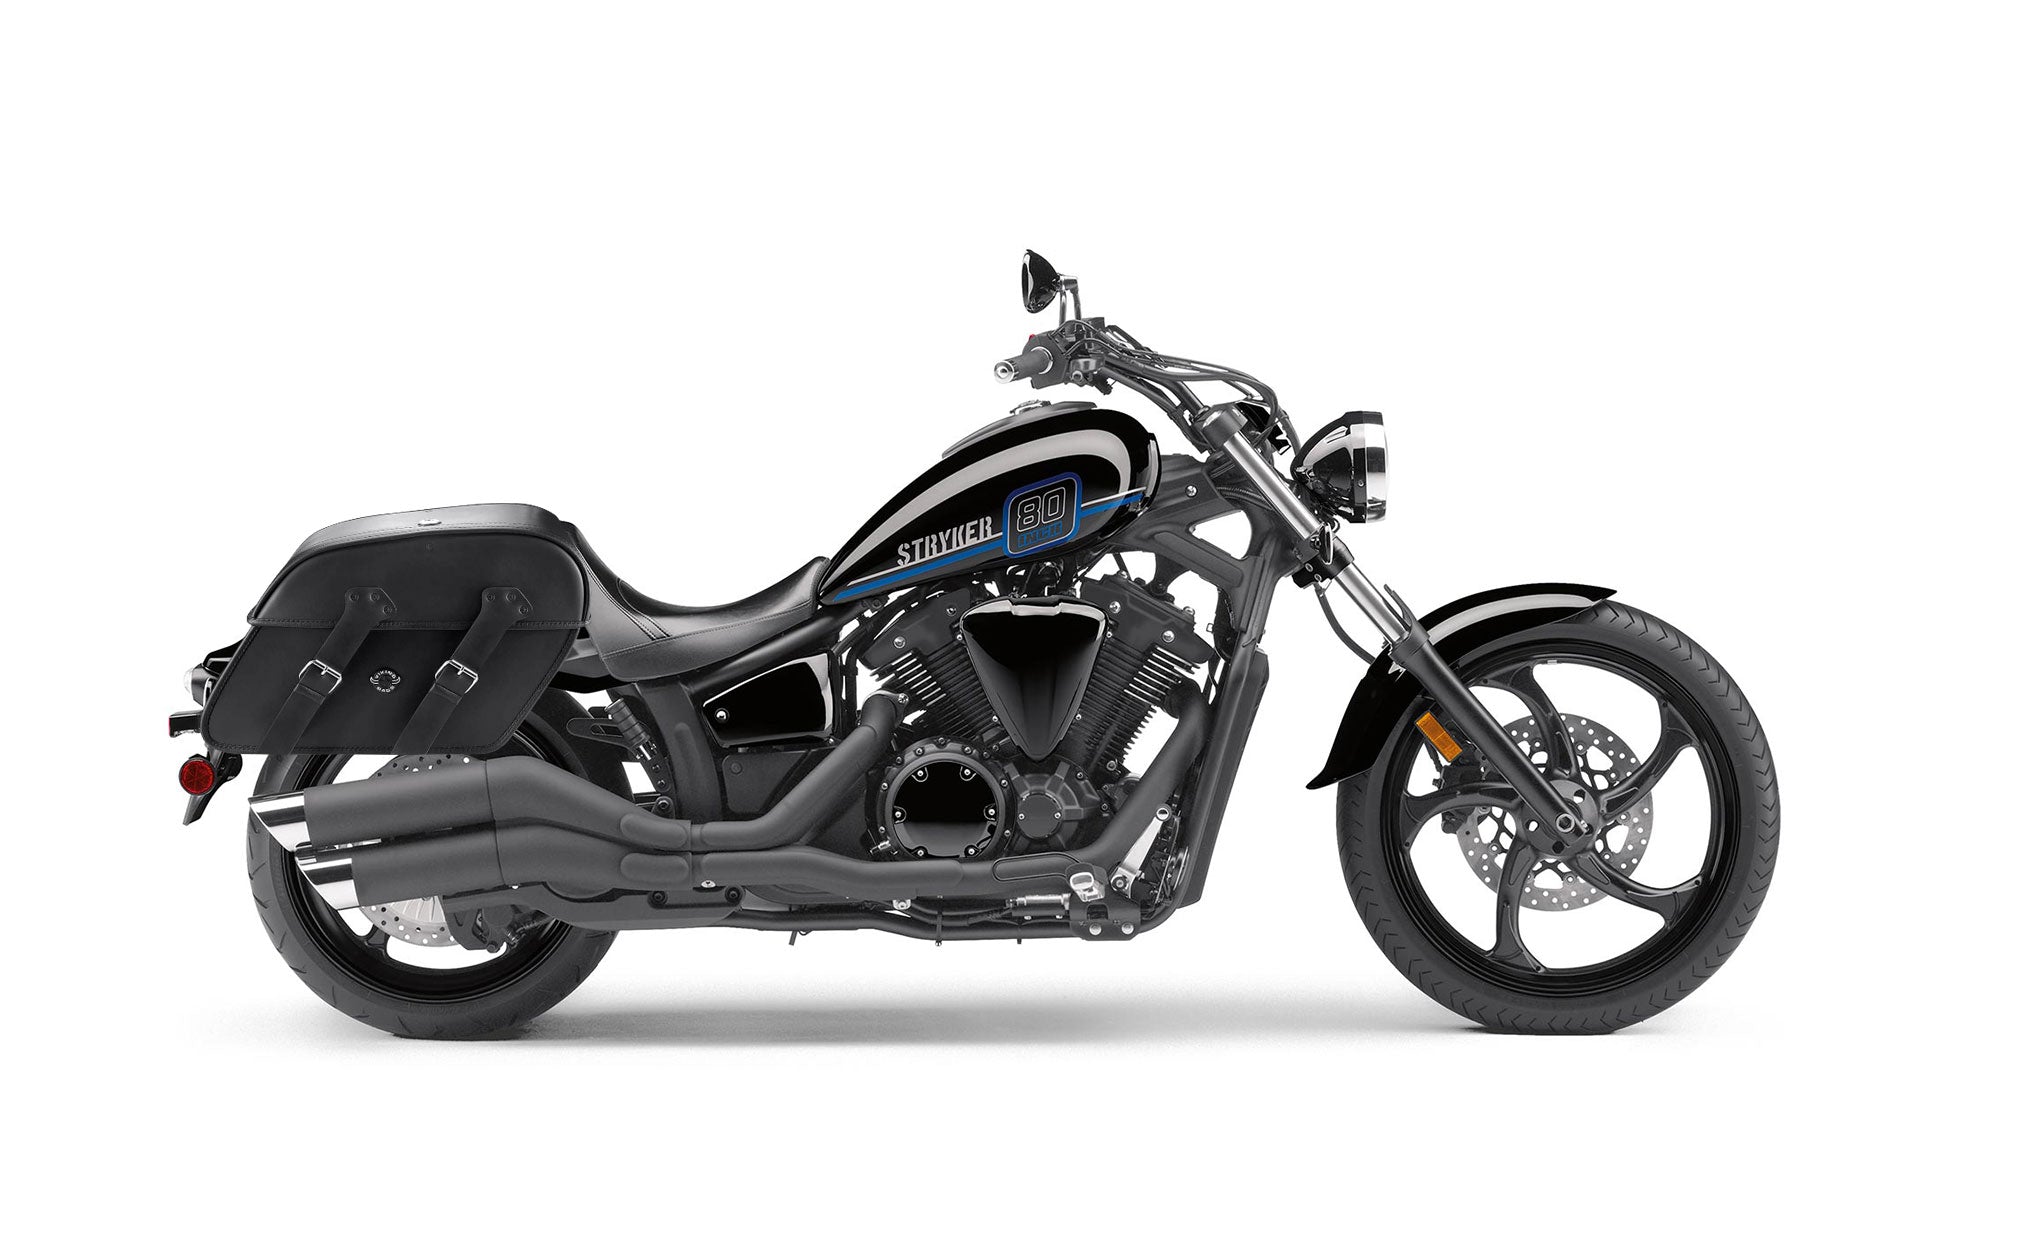 Viking Raven Extra Large Yamaha Stryker Leather Motorcycle Saddlebags on Bike Photo @expand